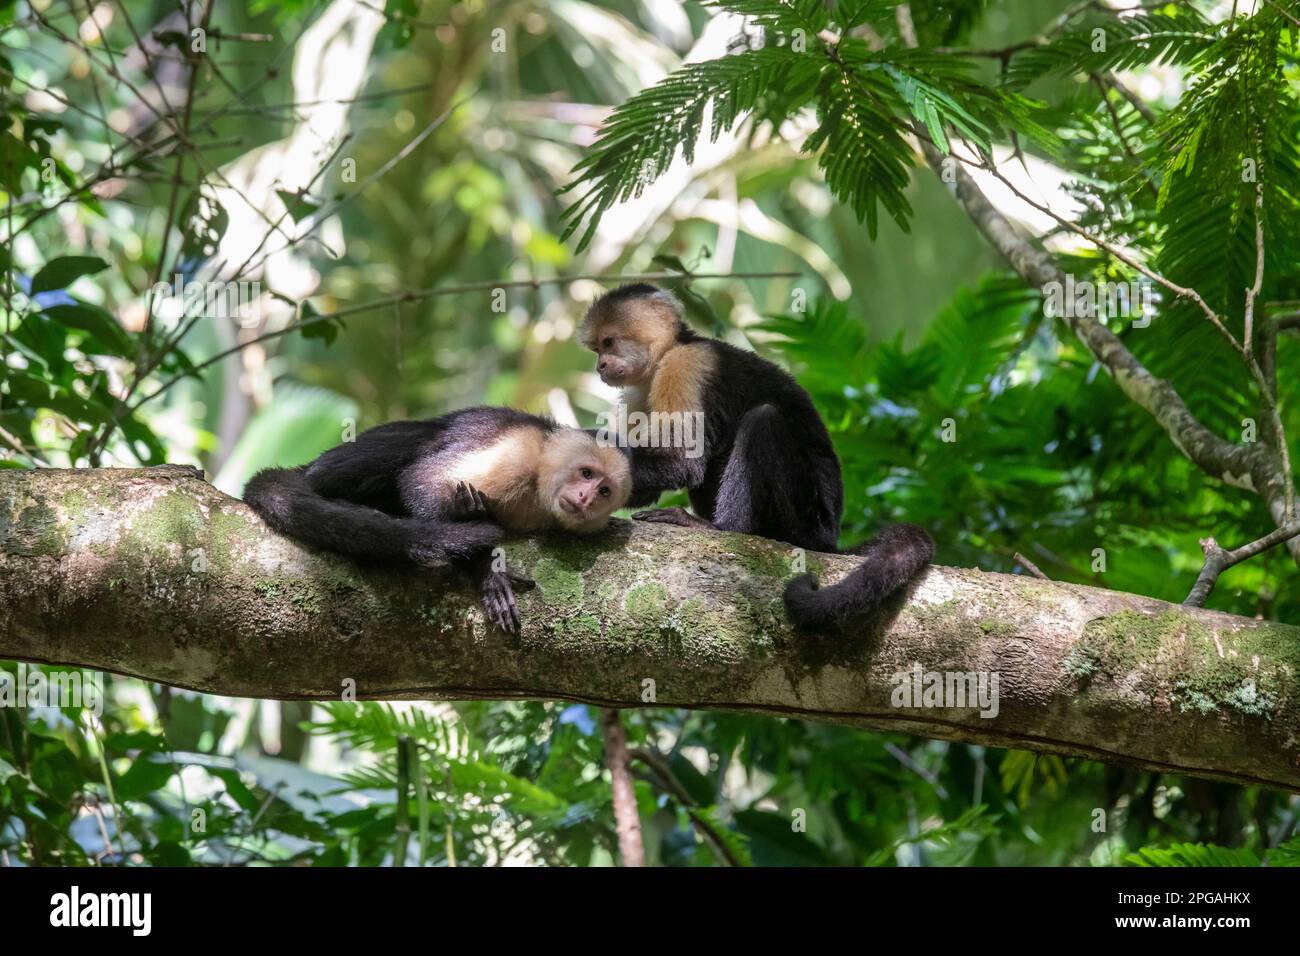 Parco Nazionale di Tortuguero, Costa Rica - scimmie cappuccine panamaniane dalla facciata bianca (Cebus imitator). Foto Stock